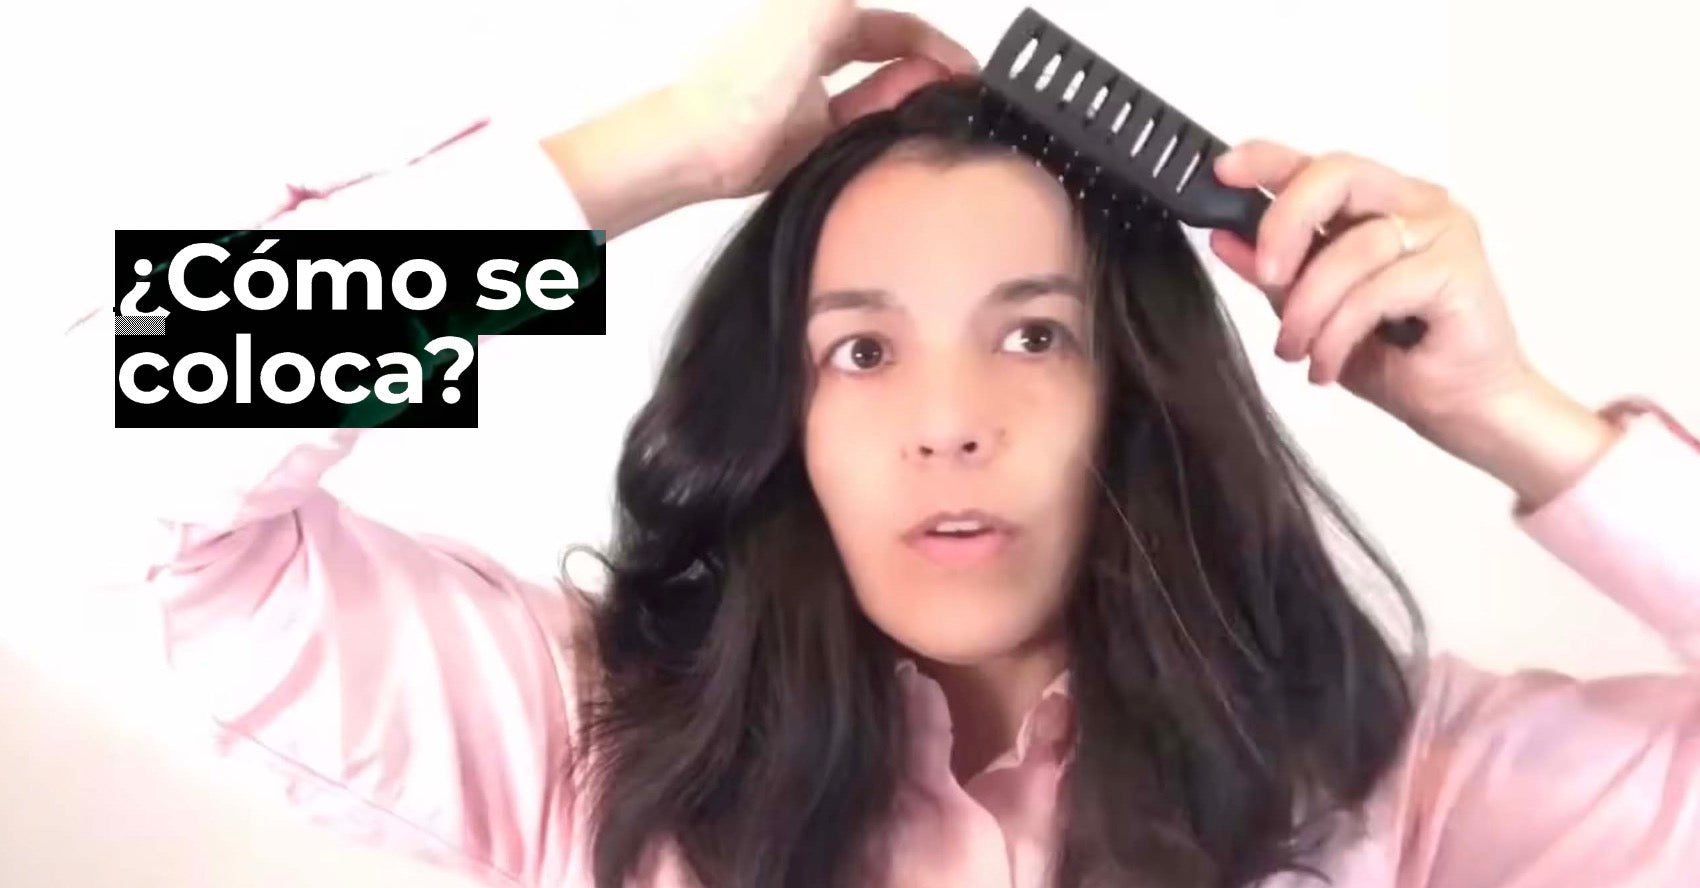 Load video: ¿Cómo se coloca un hair topper?